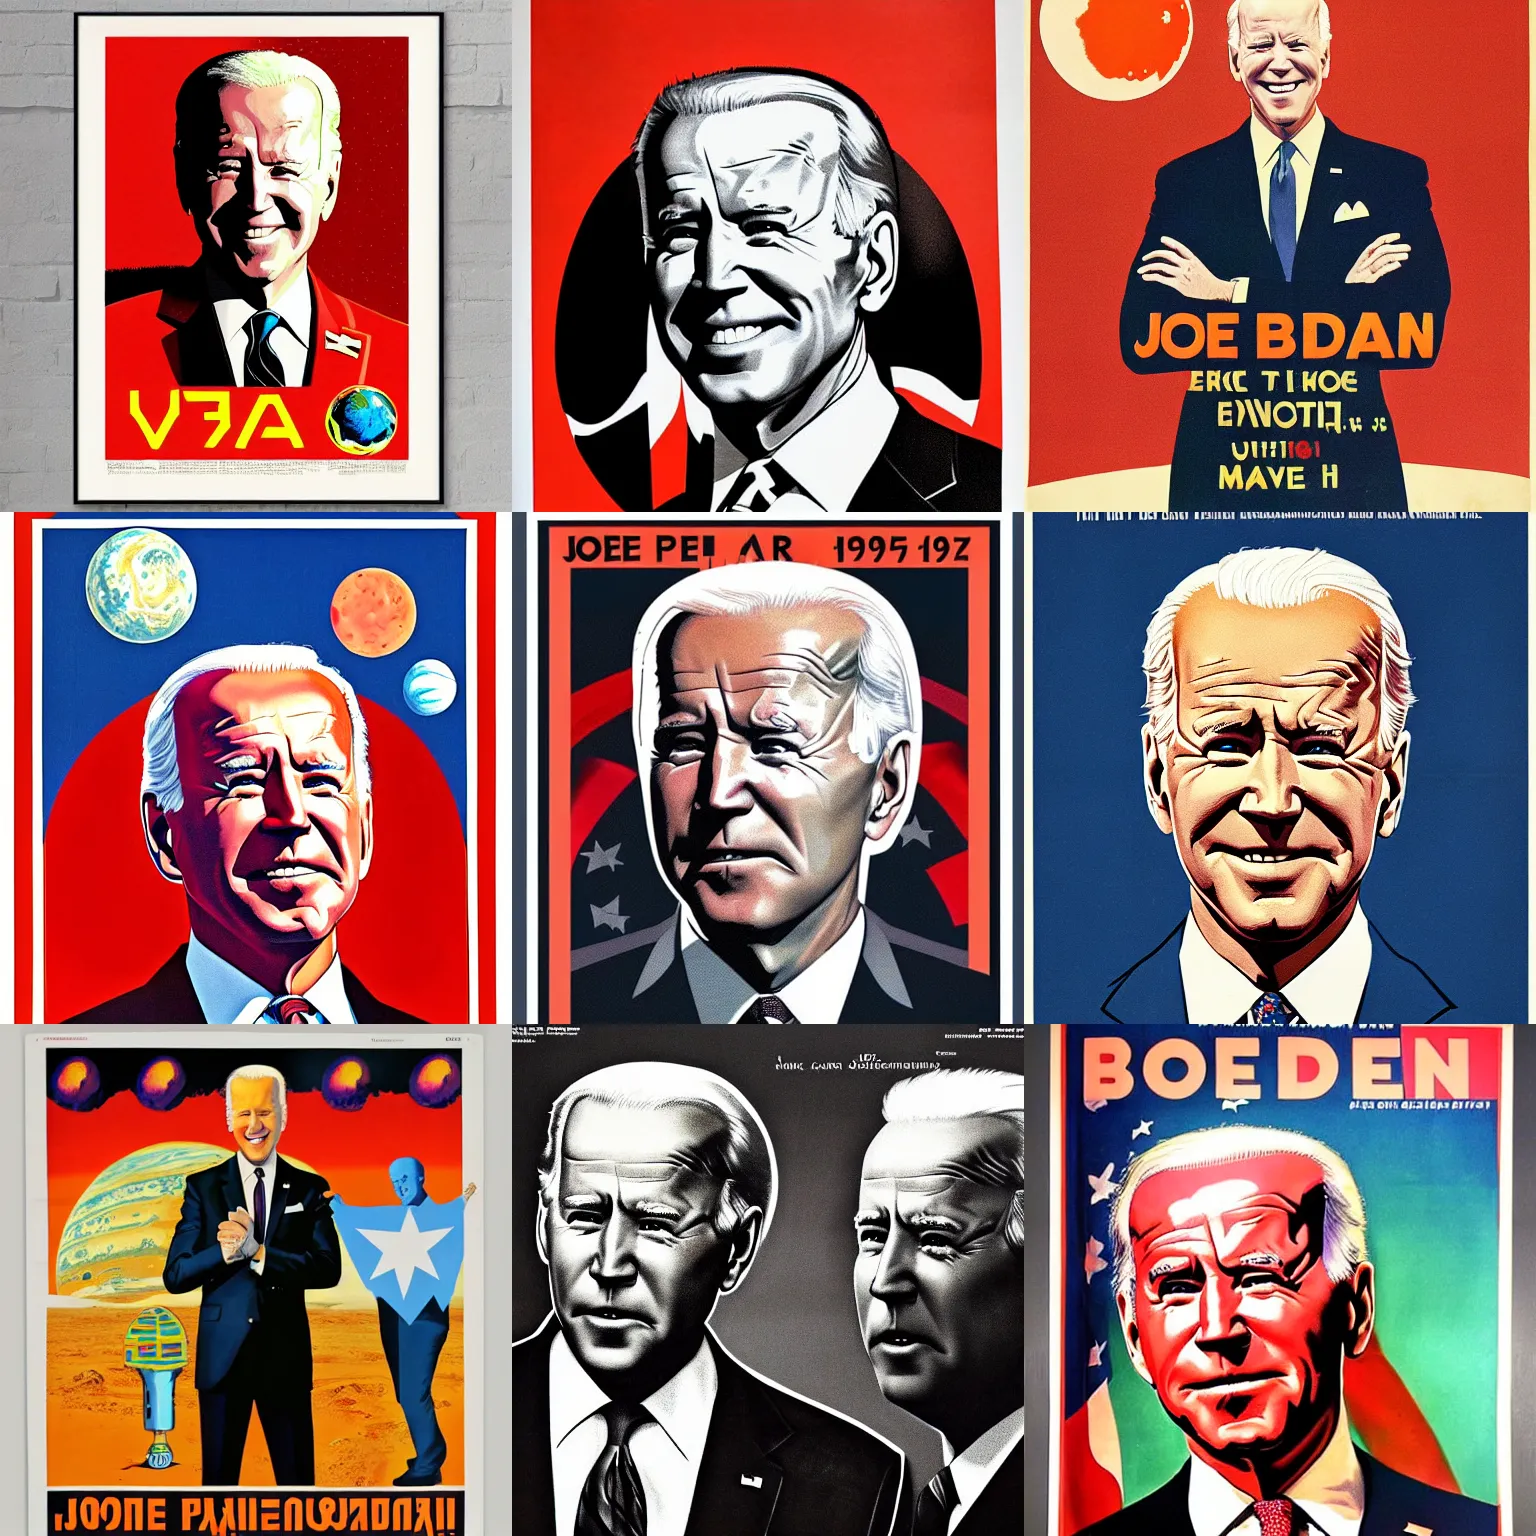 Prompt: Joe Biden portrait, planet mars, 60s poster, 1972 Soviet